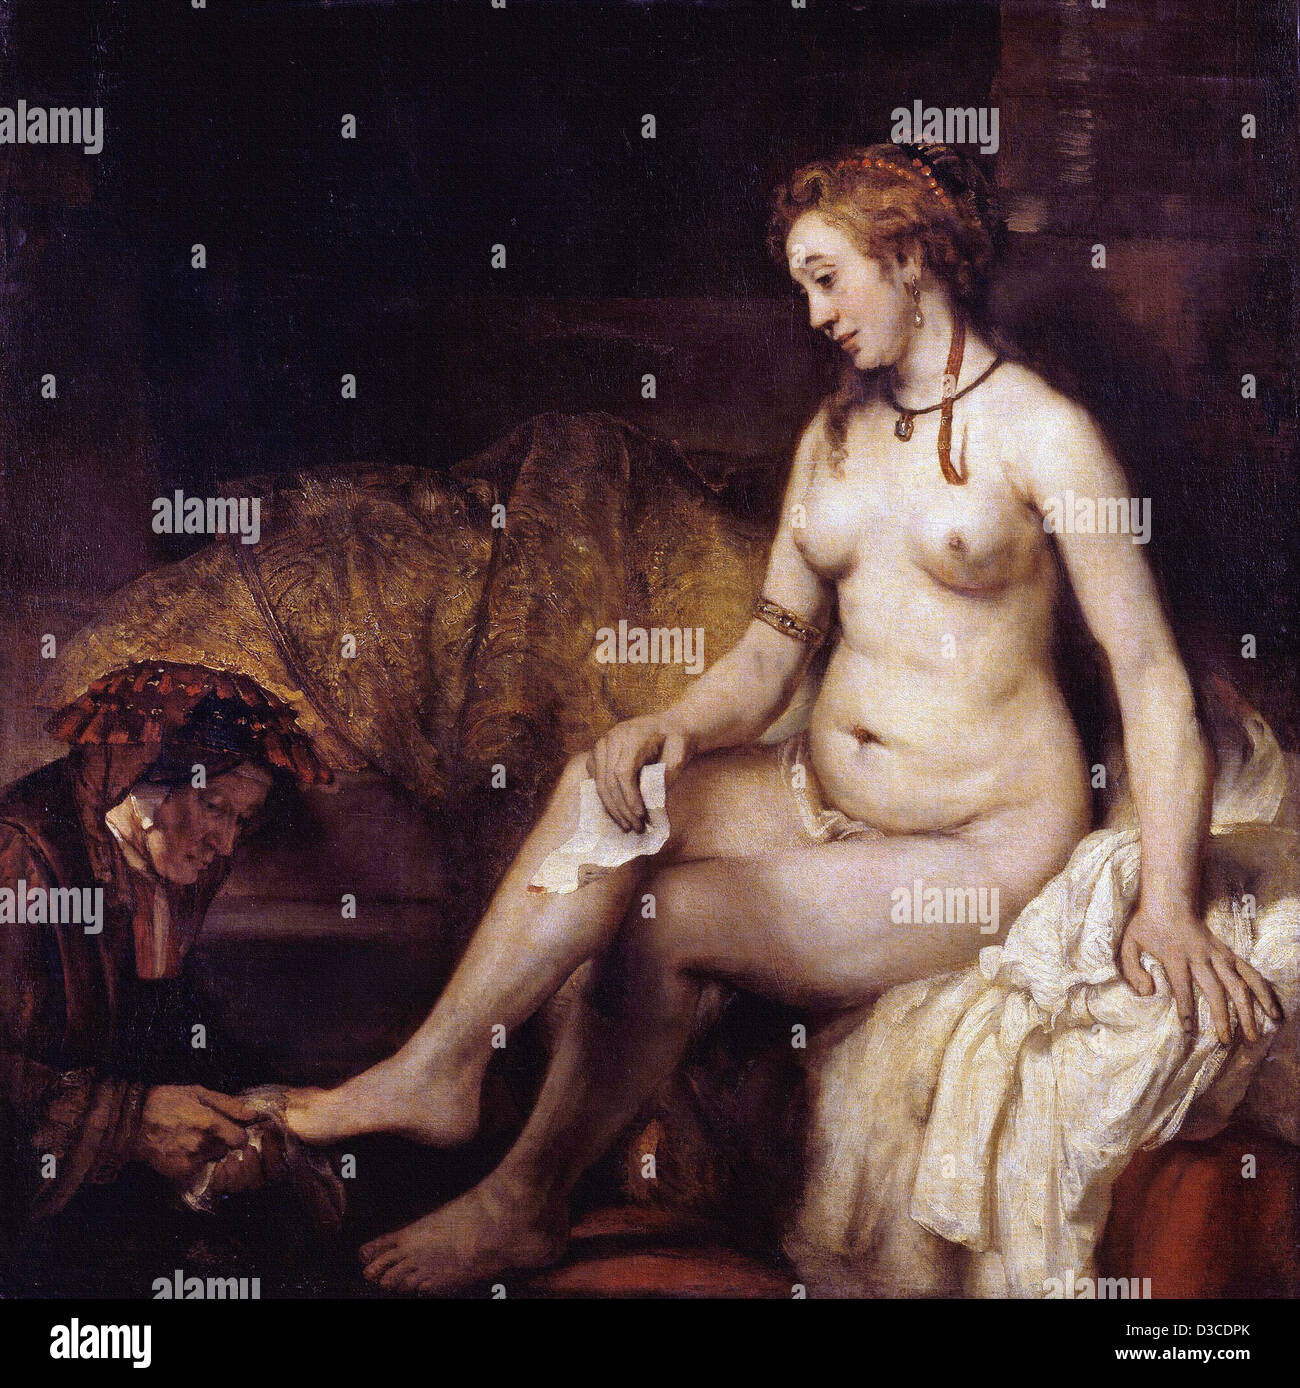 Rembrandt van Rijn, Bathsheba Bathing. 1654 Oil on canvas. Musée du Louvre, Paris. Baroque. Stock Photo